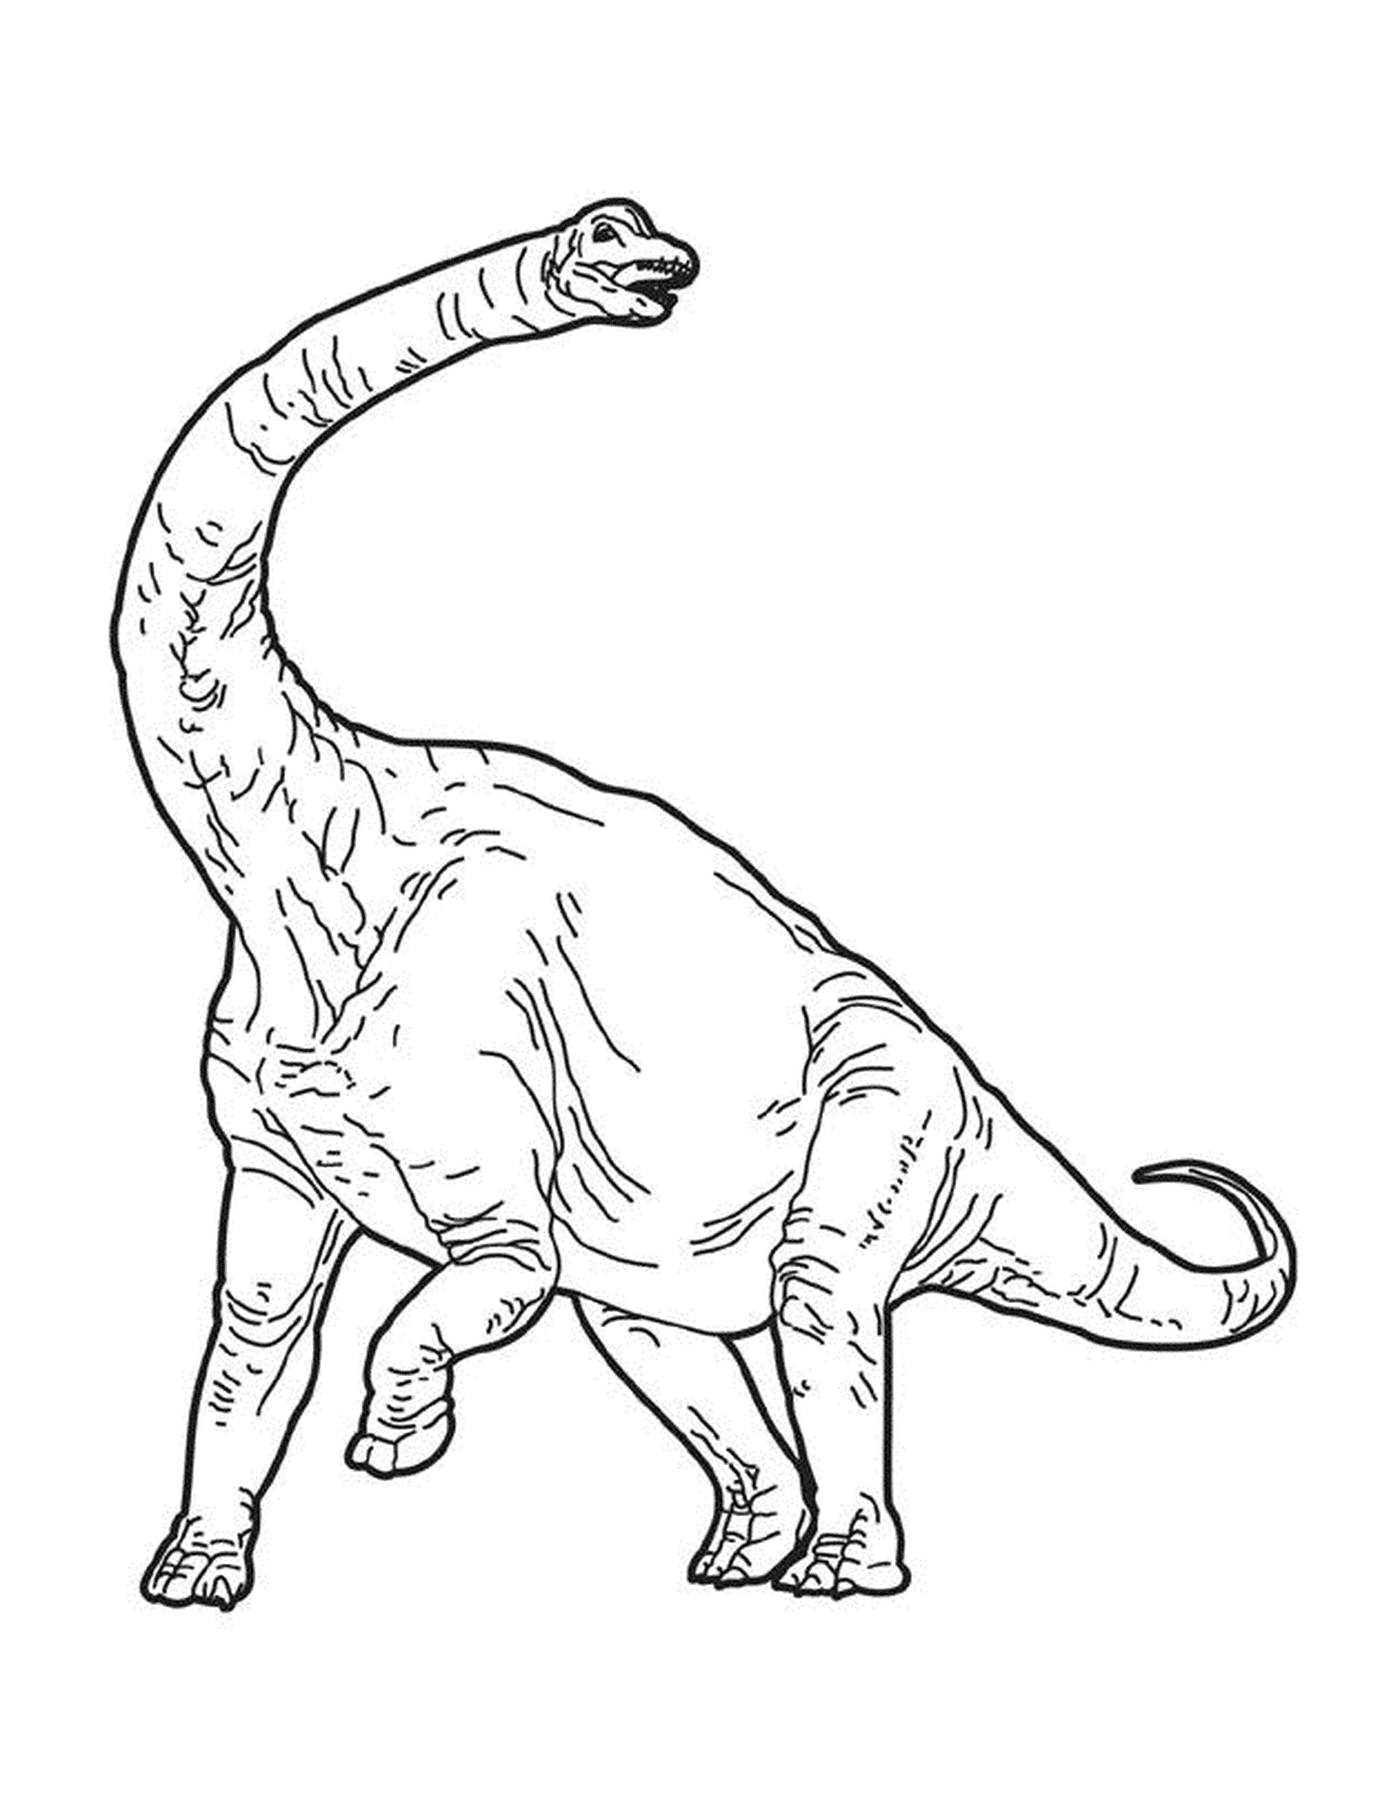  Ein Dinosaurier mit einem langen Schwanz 